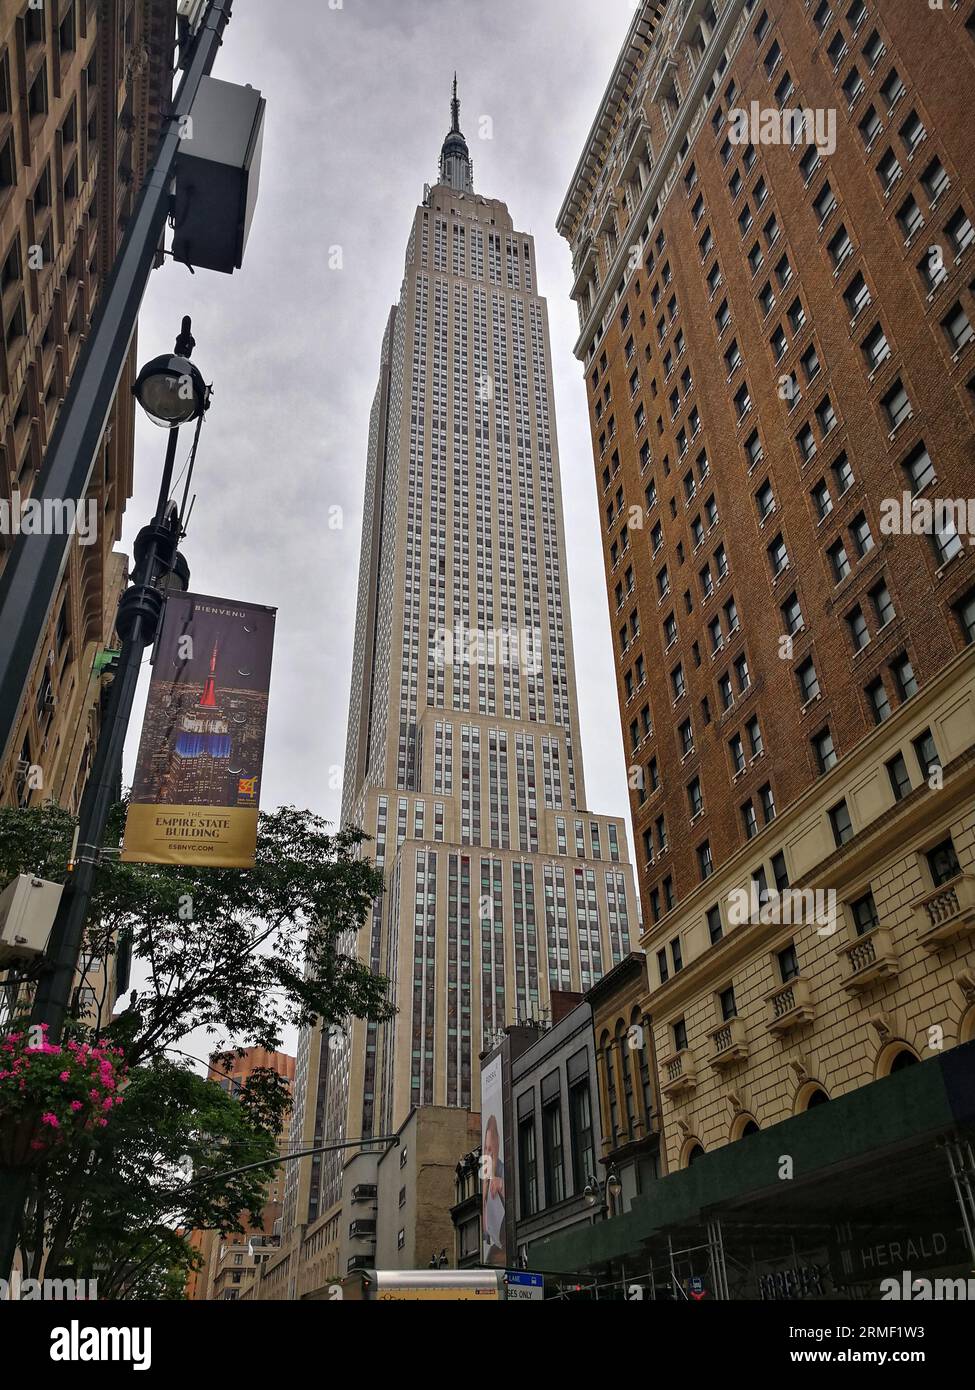 Cette photo montre une vue de l'Empire State Building depuis la rue de New York. Le bâtiment est grand et imposant, et il domine la ligne d'horizon. Banque D'Images